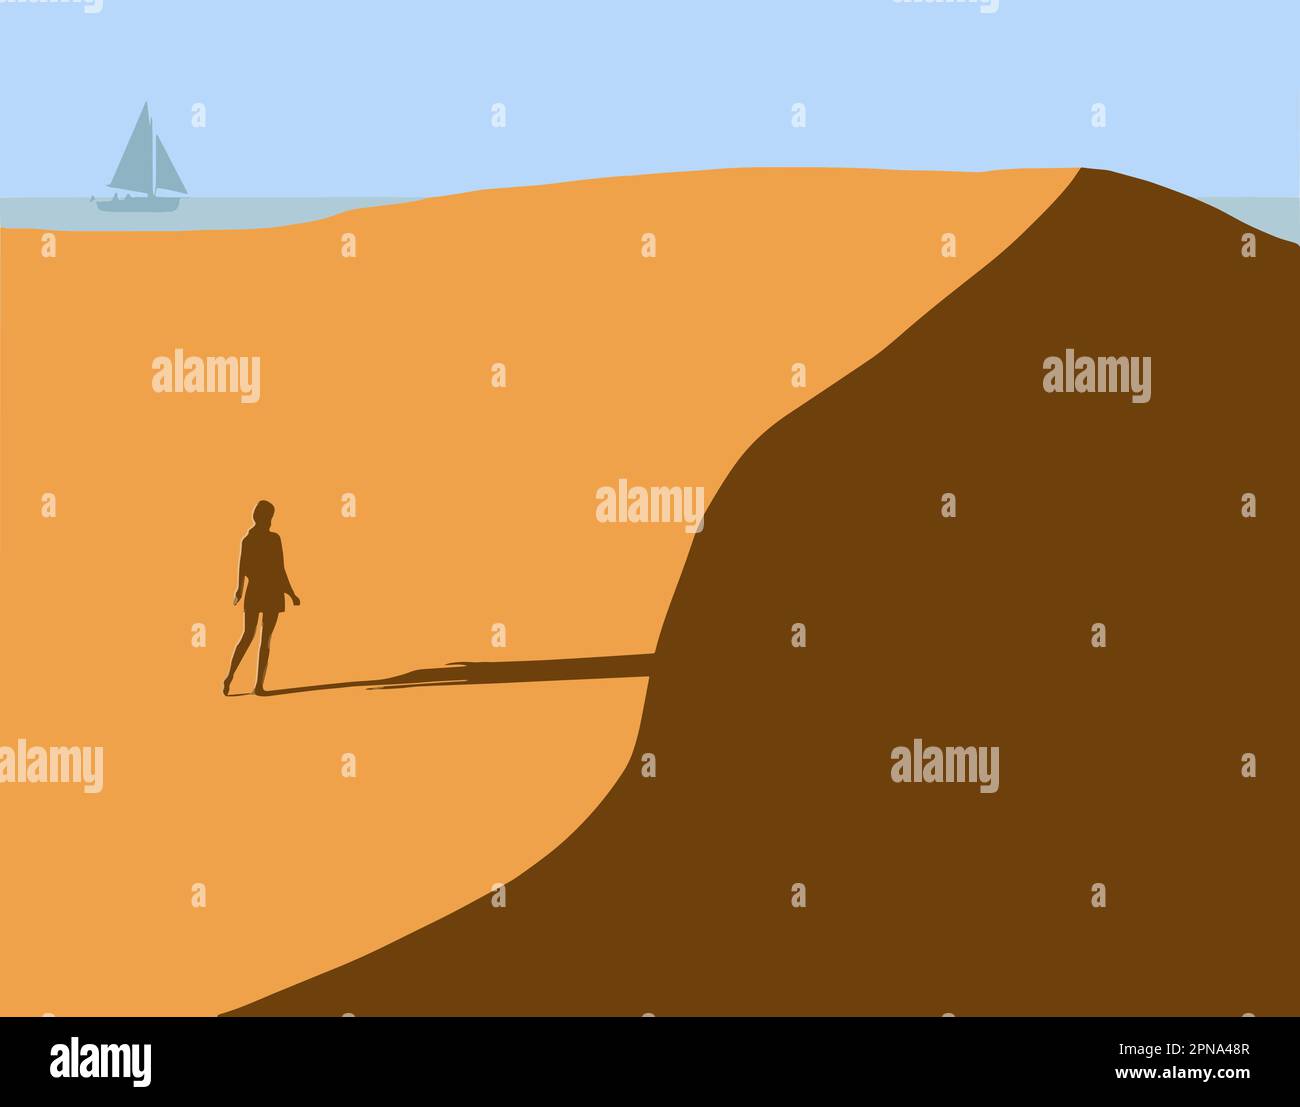 Une femme est vue sur une dune de sable qui se trouve près d'un rivage du lac Michigan dans le nord de l'Indiana dans cette illustration vectorielle. Illustration de Vecteur